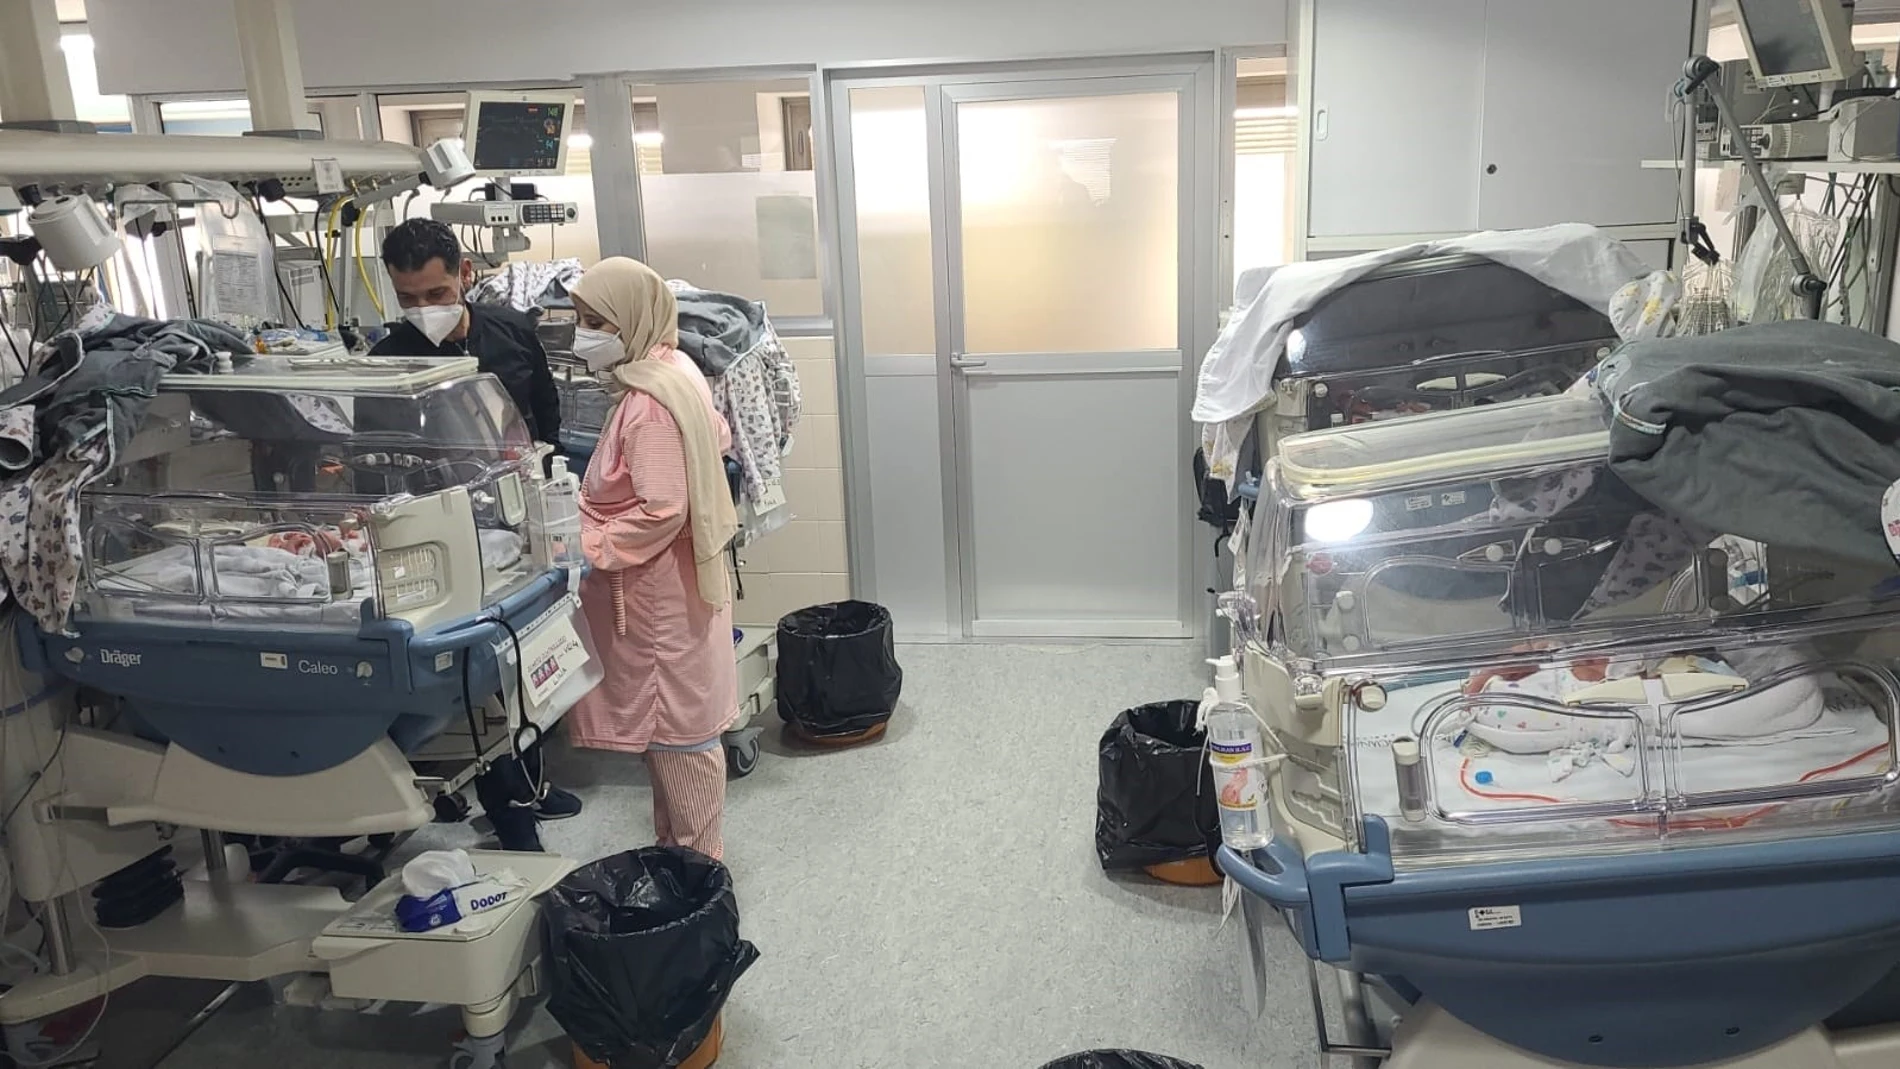 El Hospital General de Elche acoge un parto de cuatrillizos, que muestran una evolución favorable en la UCI